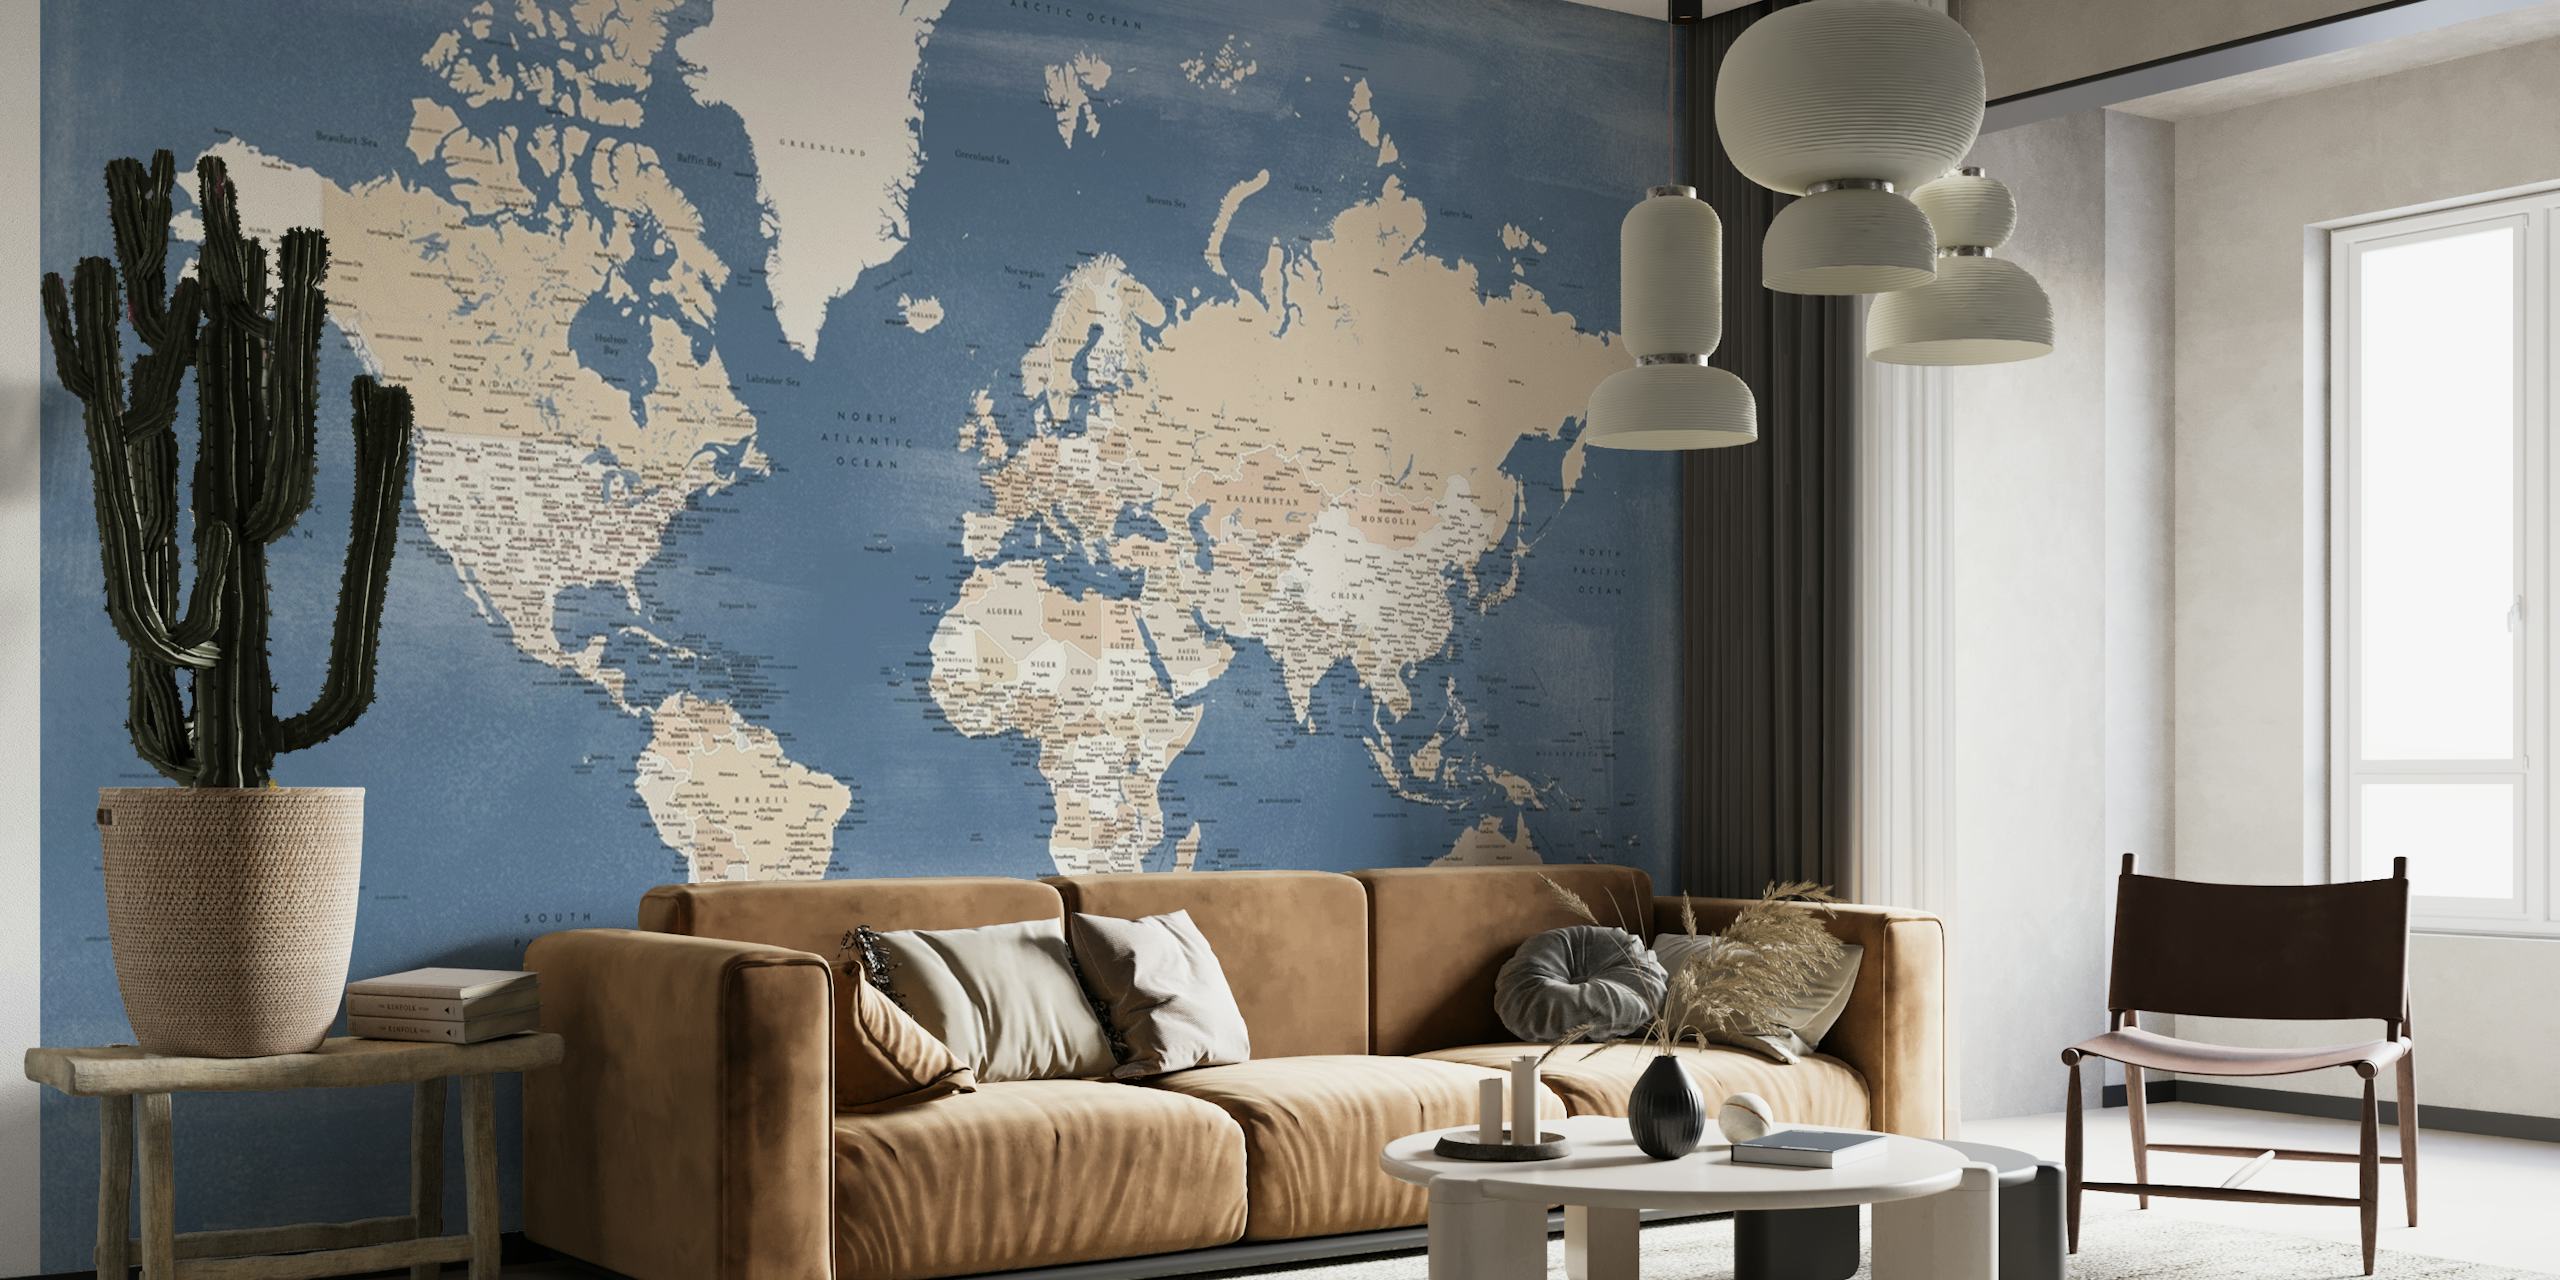 Carta da parati con mappa del mondo in stile vintage su sfondo blu